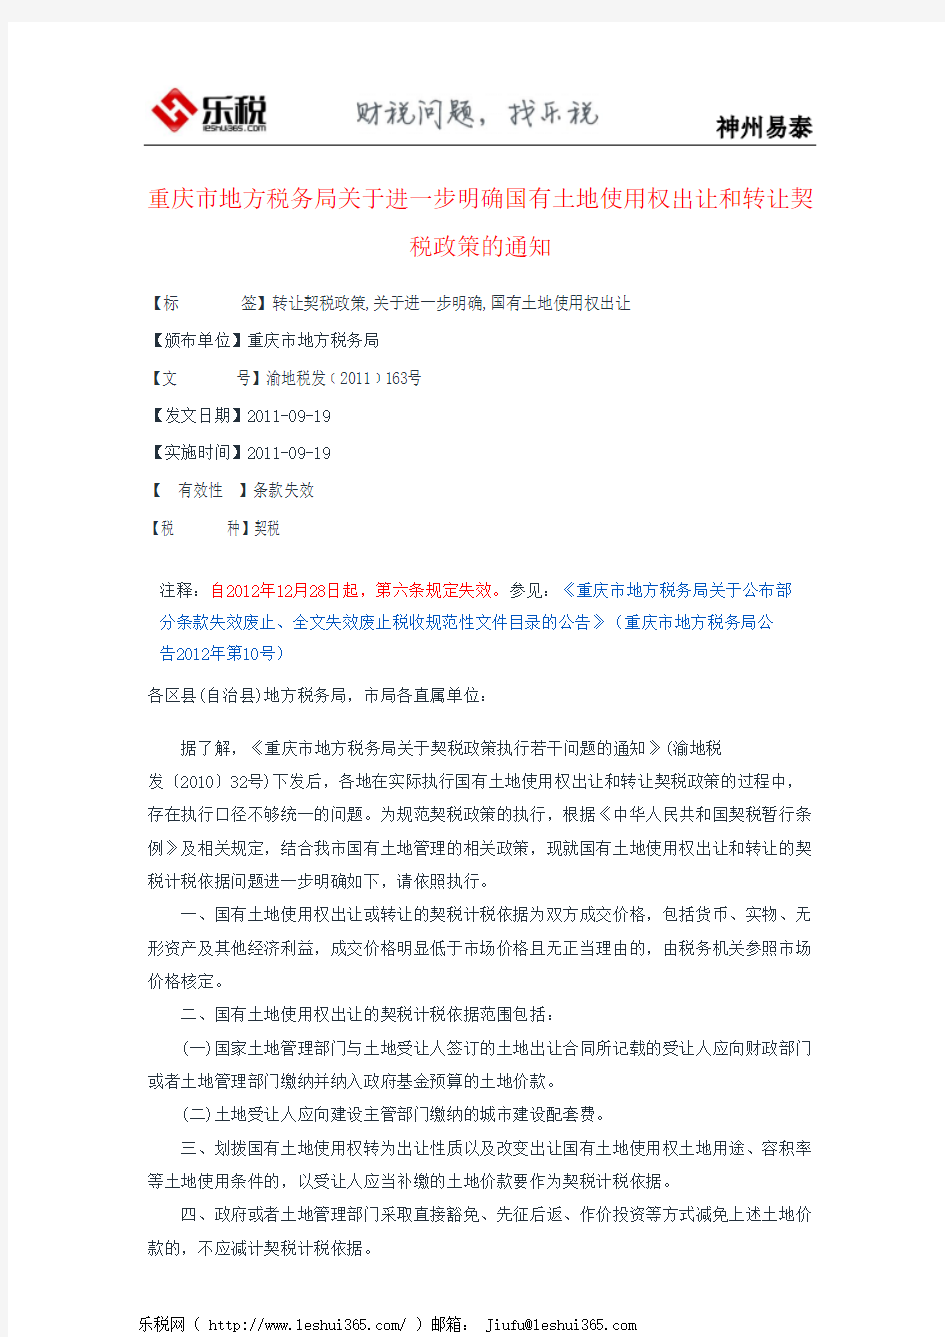 重庆市地方税务局关于进一步明确国有土地使用权出让和转让契税政